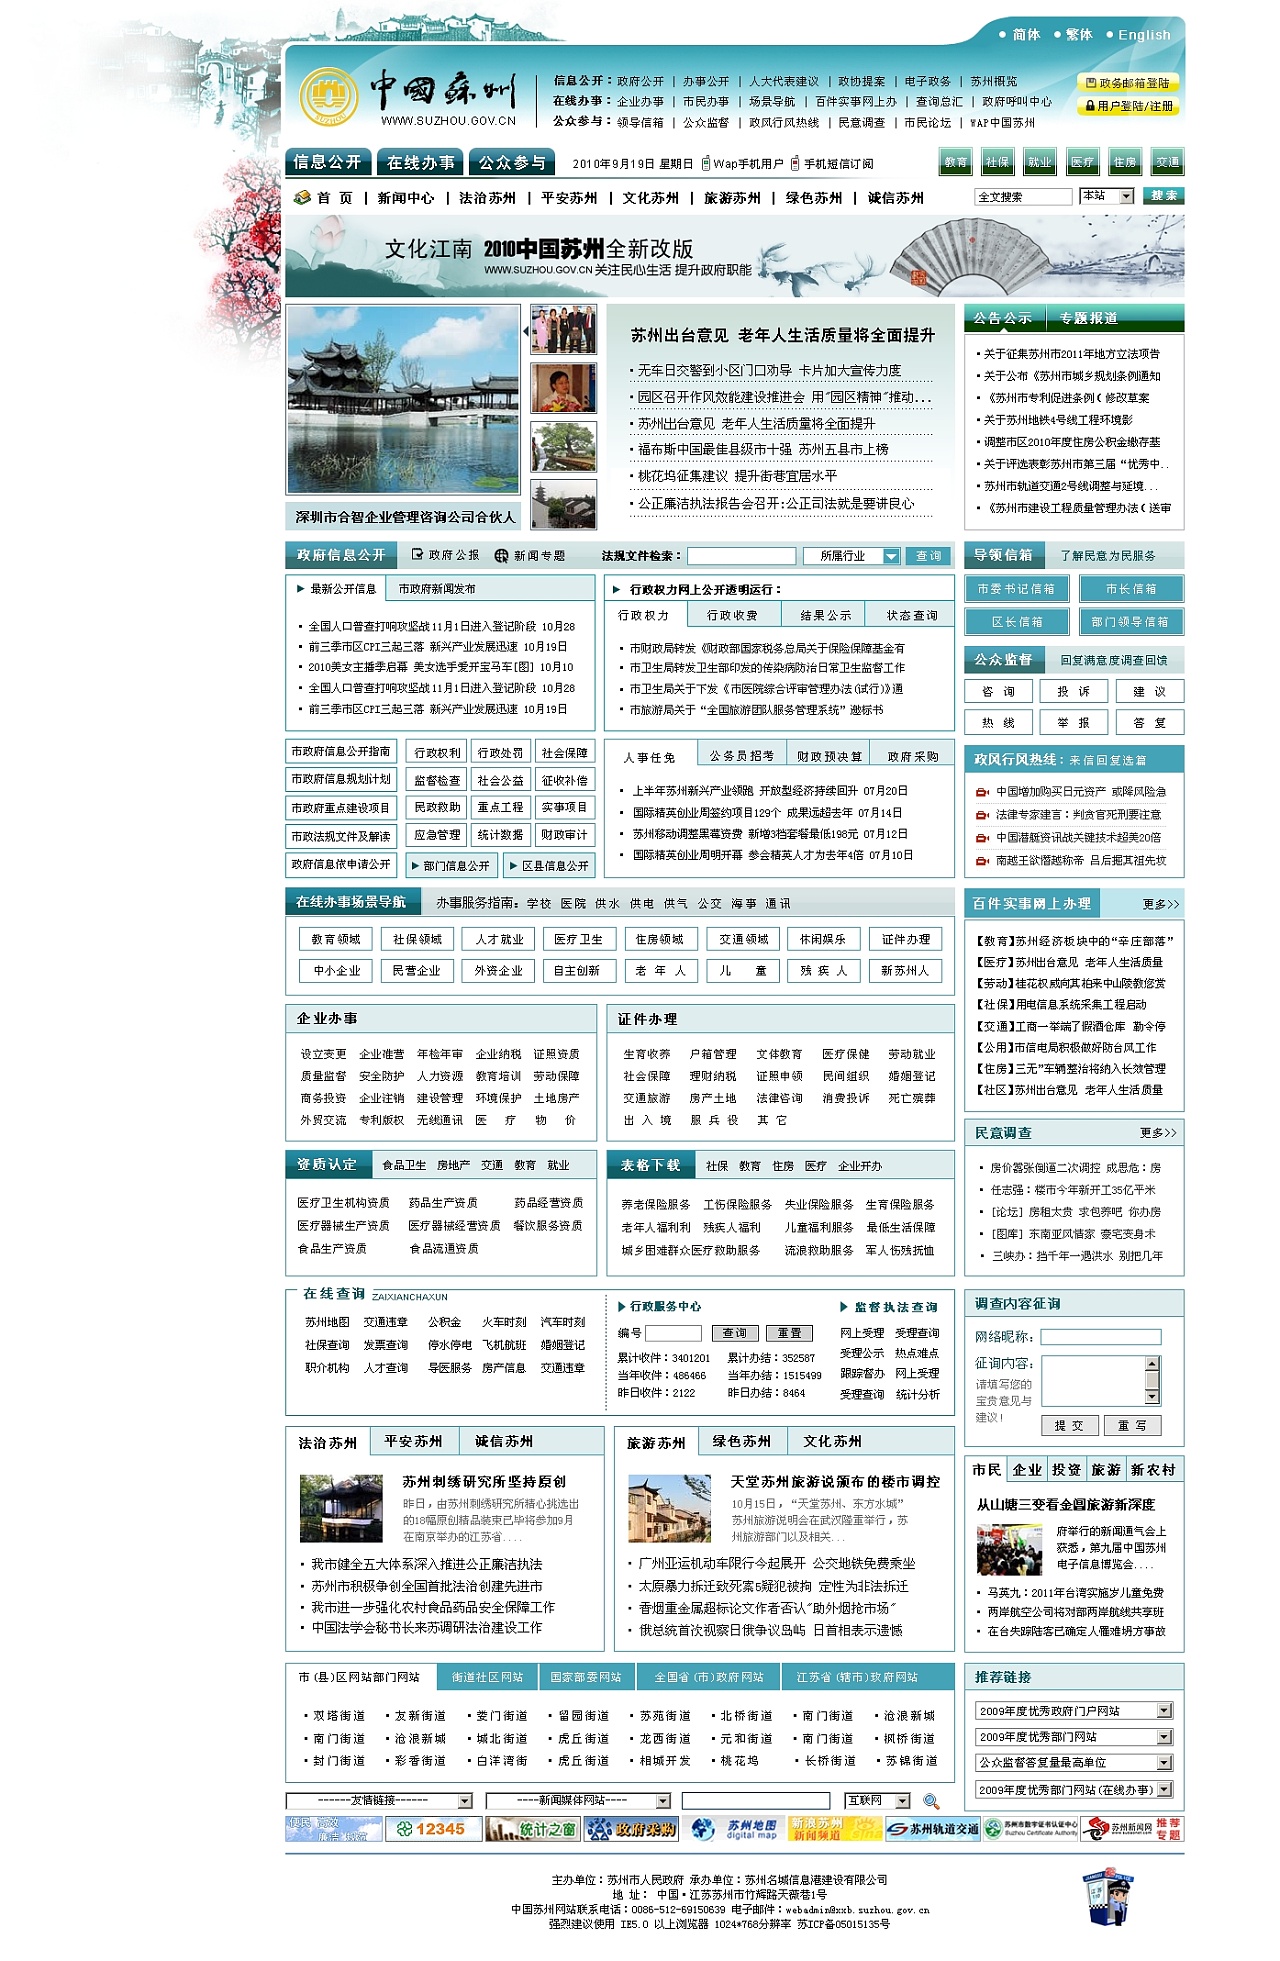 苏州市门户网站设计